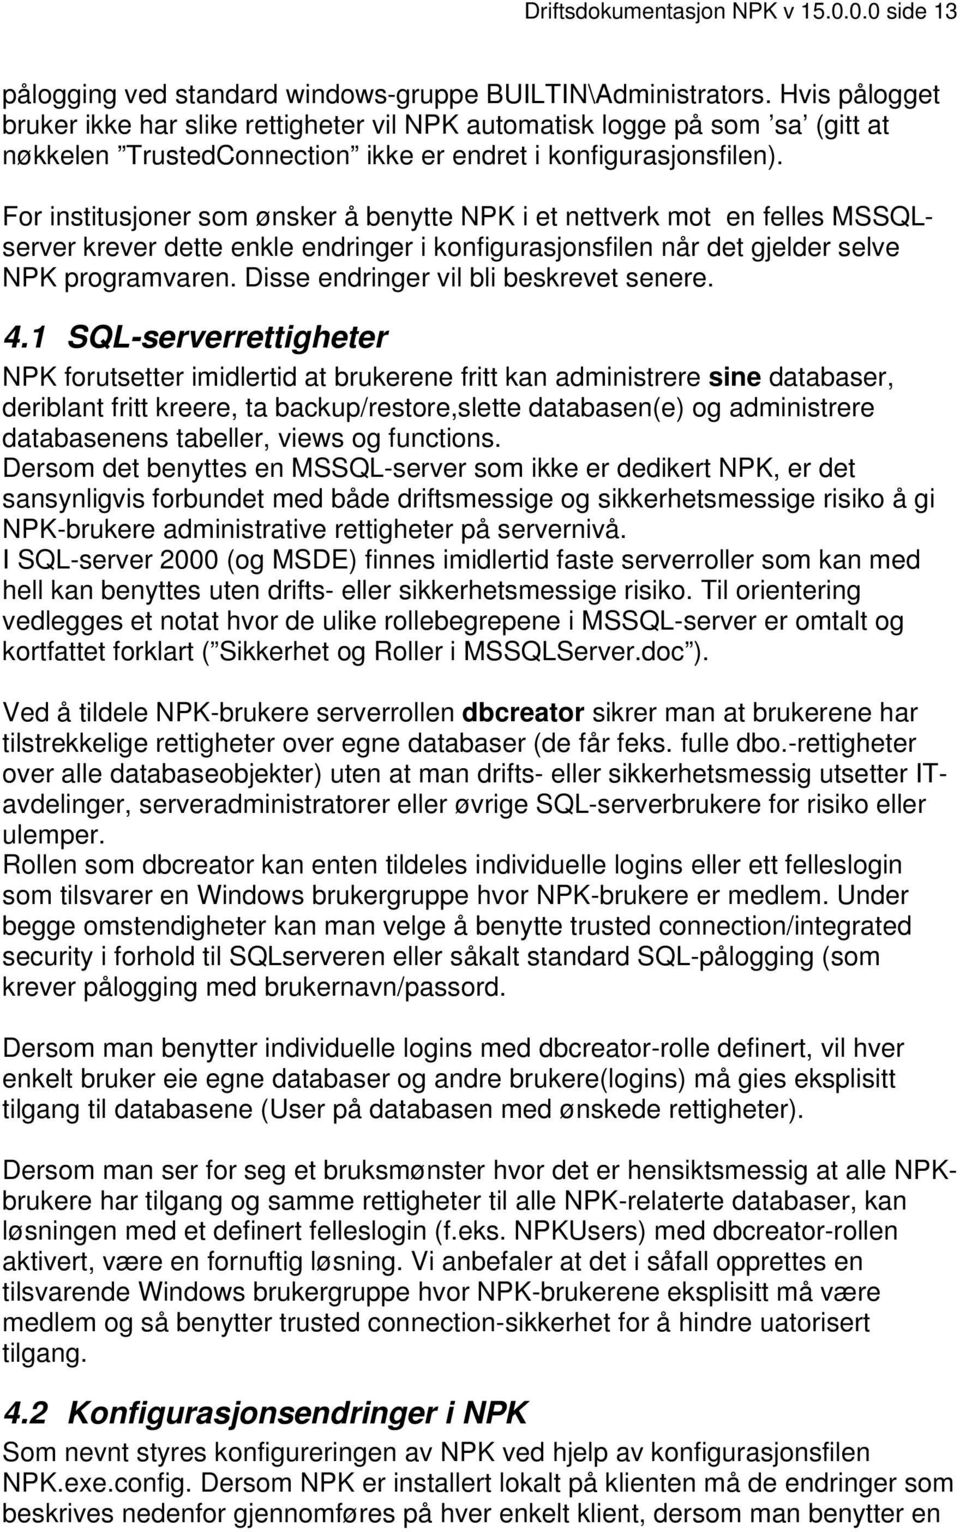 For institusjoner som ønsker å benytte NPK i et nettverk mot en felles MSSQLserver krever dette enkle endringer i konfigurasjonsfilen når det gjelder selve NPK programvaren.